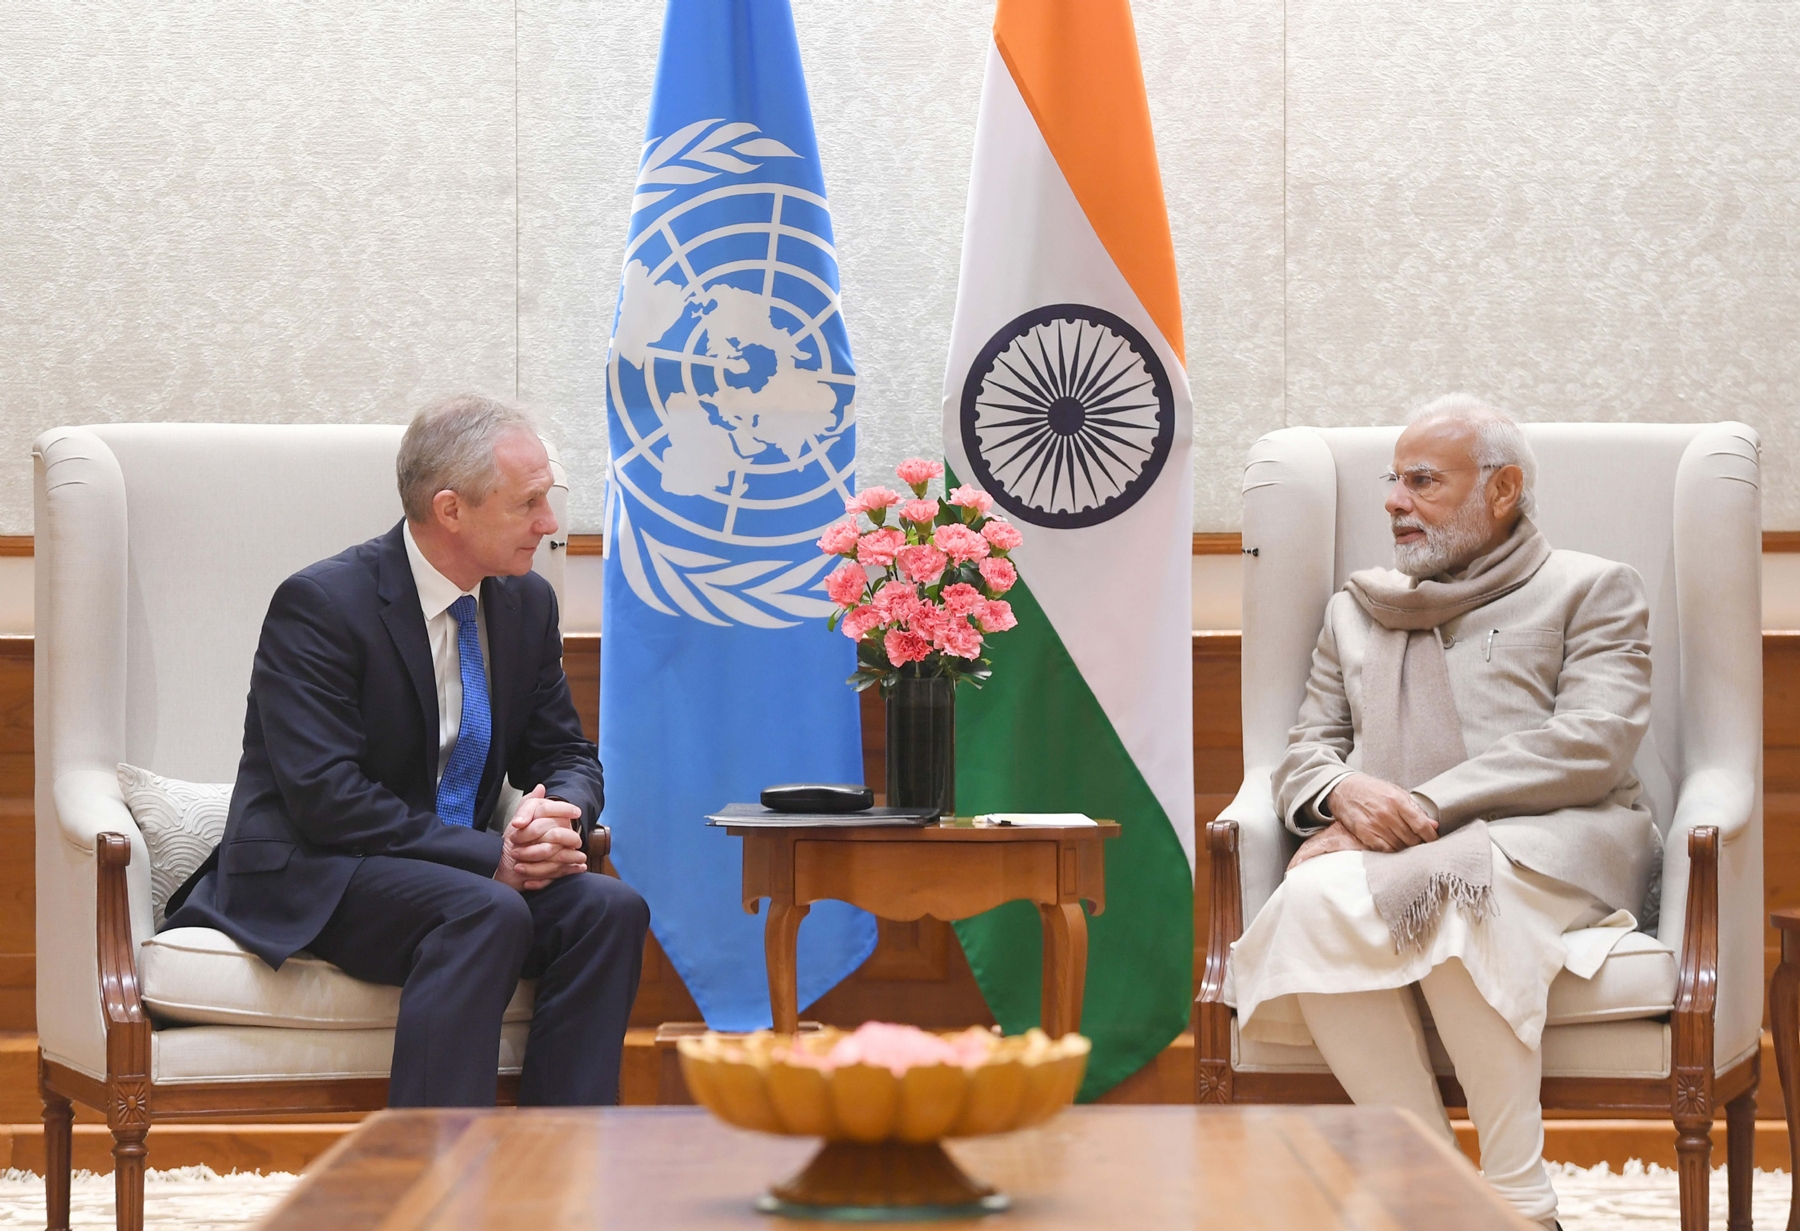 नई दिल्ली में समवार 30 जनवरी 2023 को प्रधानमंत्री नरेन्द्र मोदी से संयुक्त राष्ट्र महासभा के 77वें सत्र के अध्यक्ष साबा कोरोसी से मुलाकात की। हिन्दुस्थान समाचार/ फोटो गणेश बिष्ट 